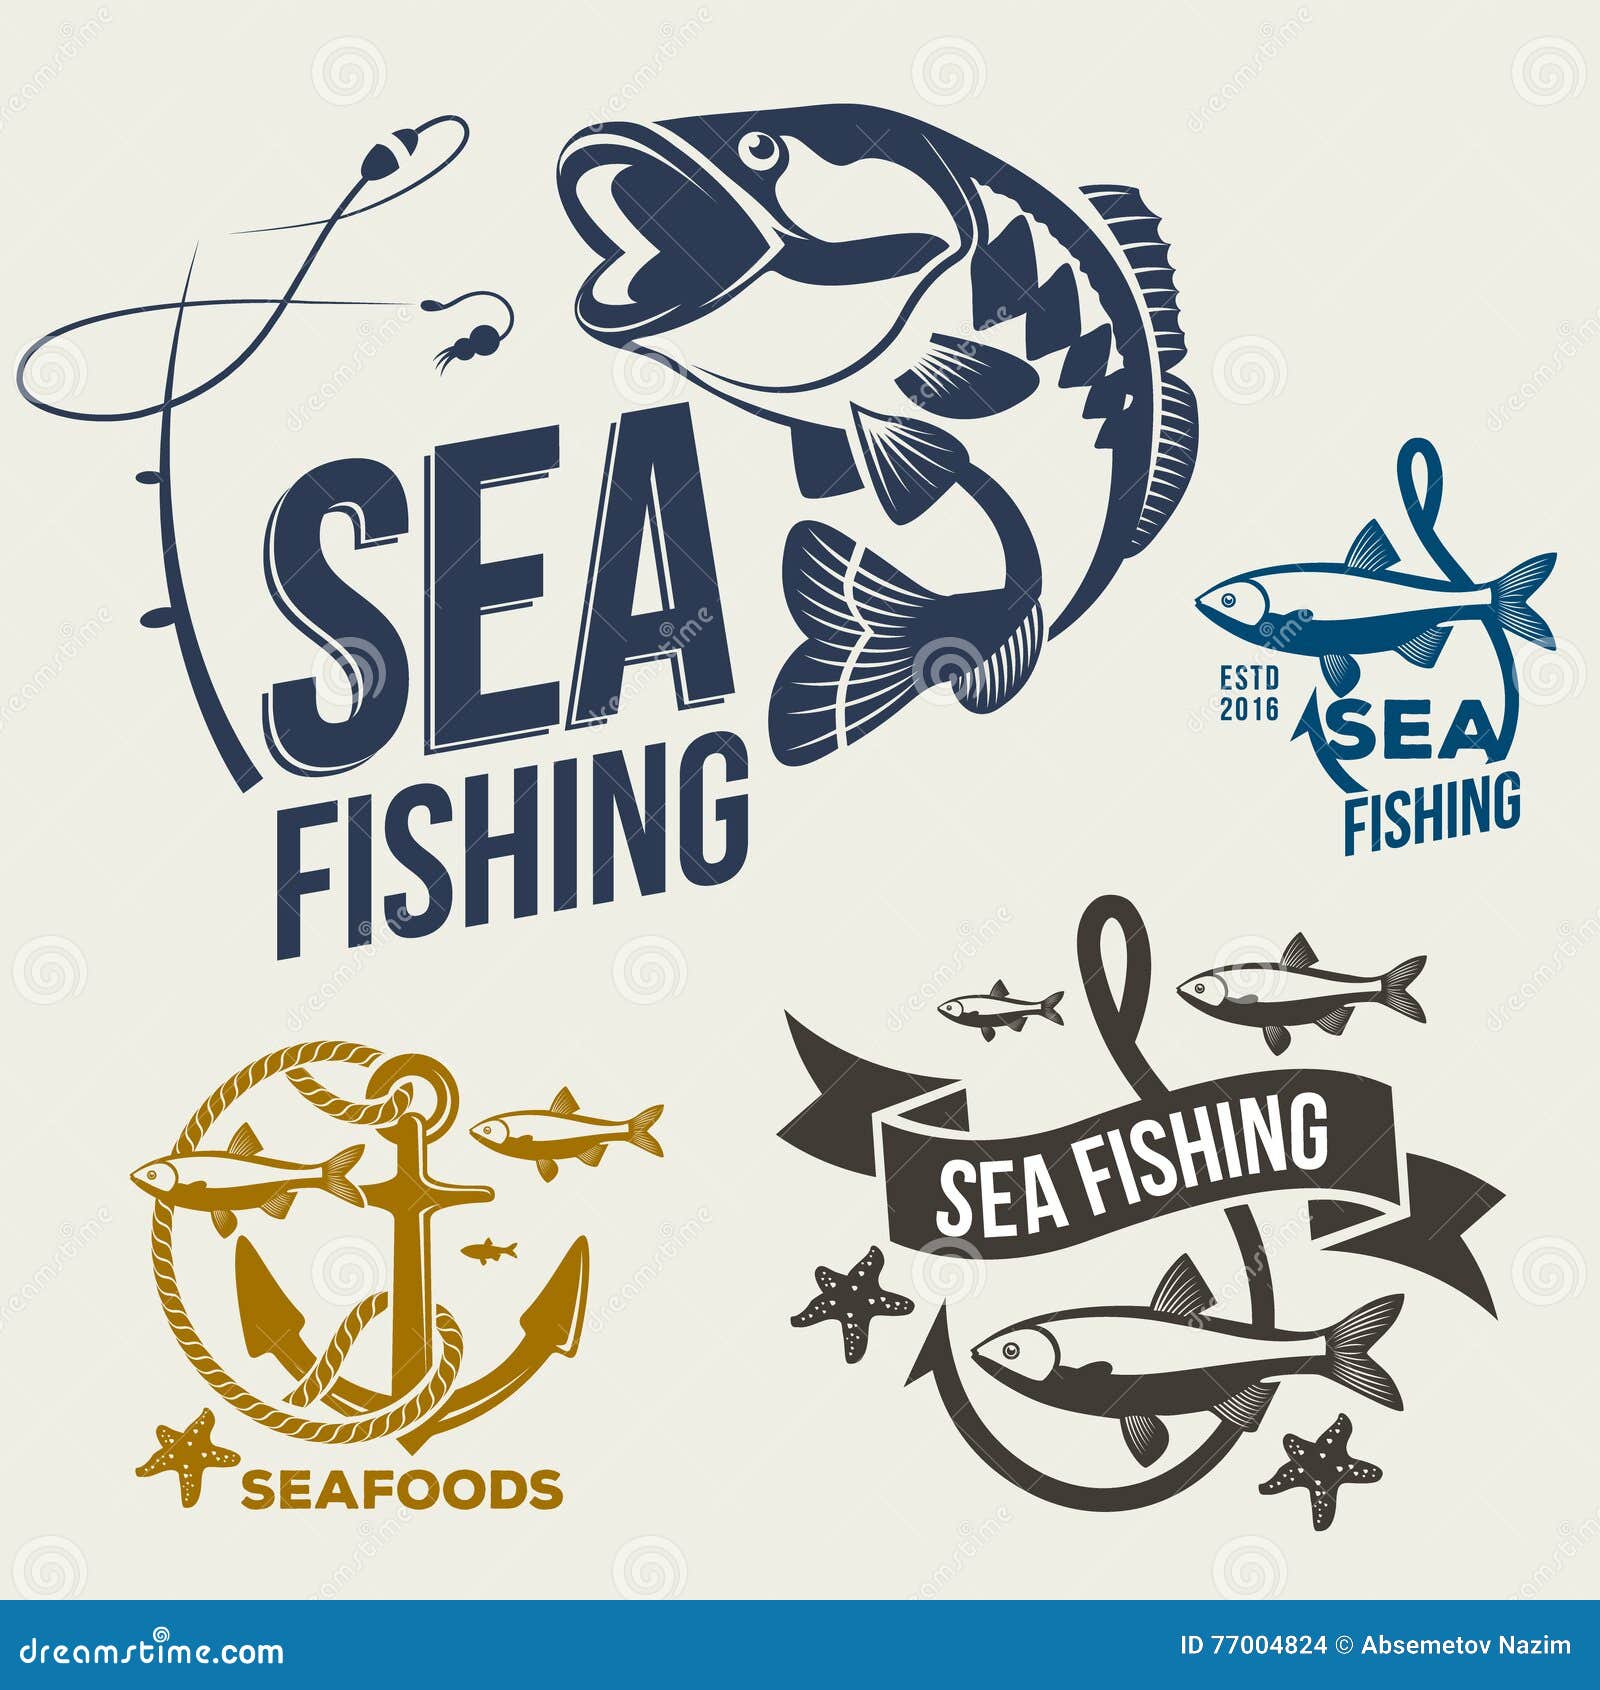 Fishing Logos Stock Illustrations – 1,293 Fishing Logos Stock